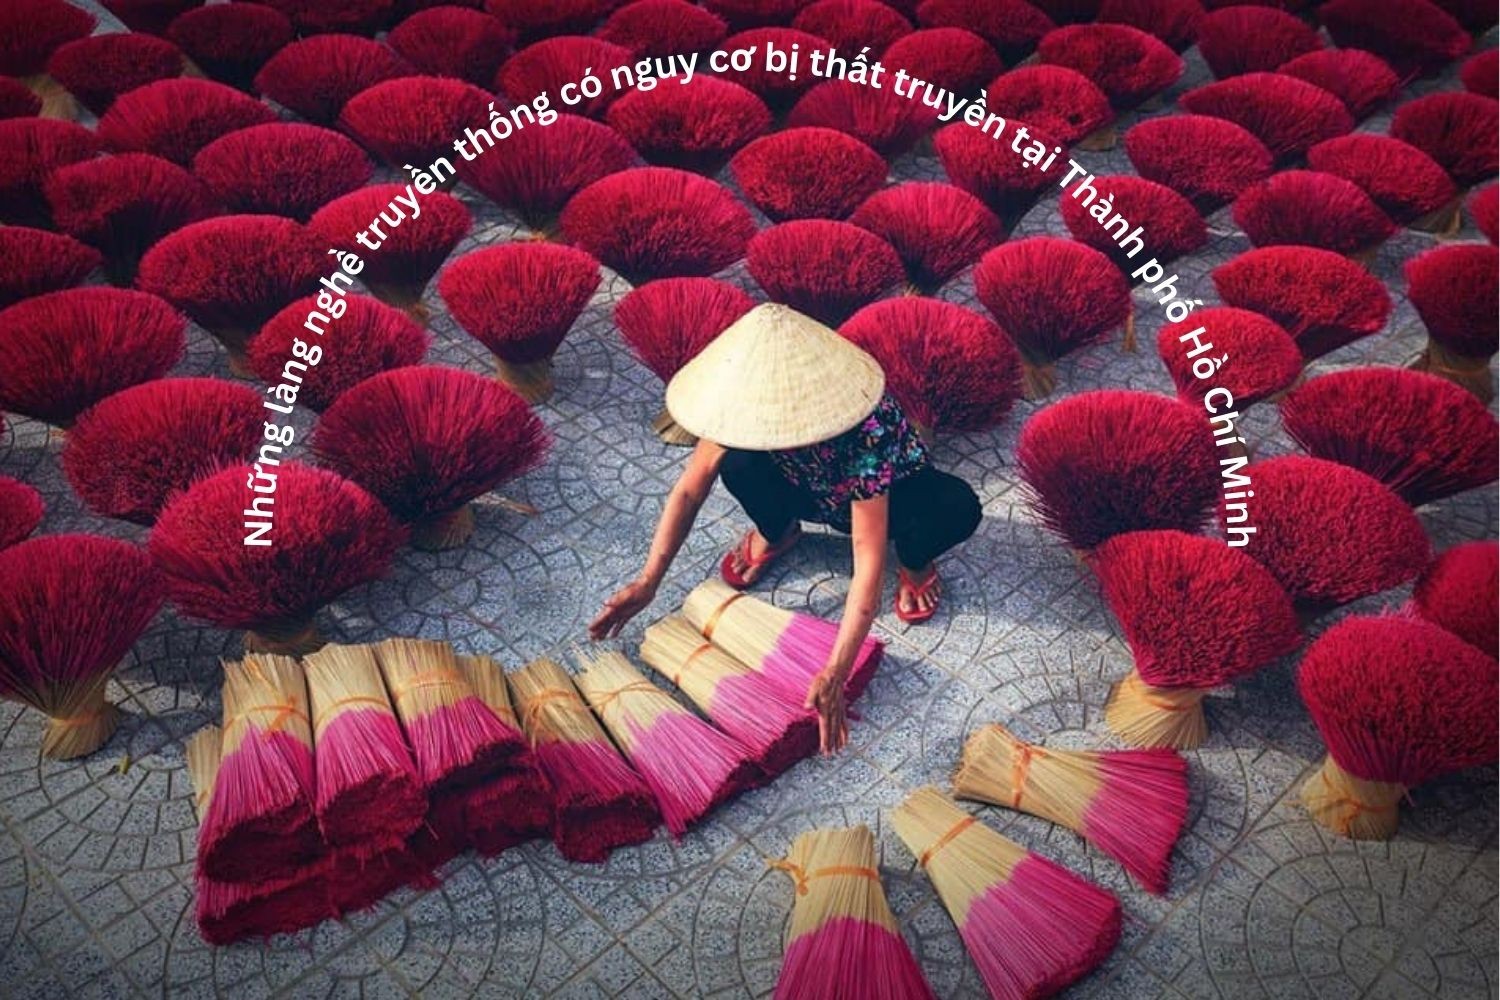 Những làng nghề truyền thống tại Thành phố Hồ Chí Minh có nguy cơ bị thất truyền